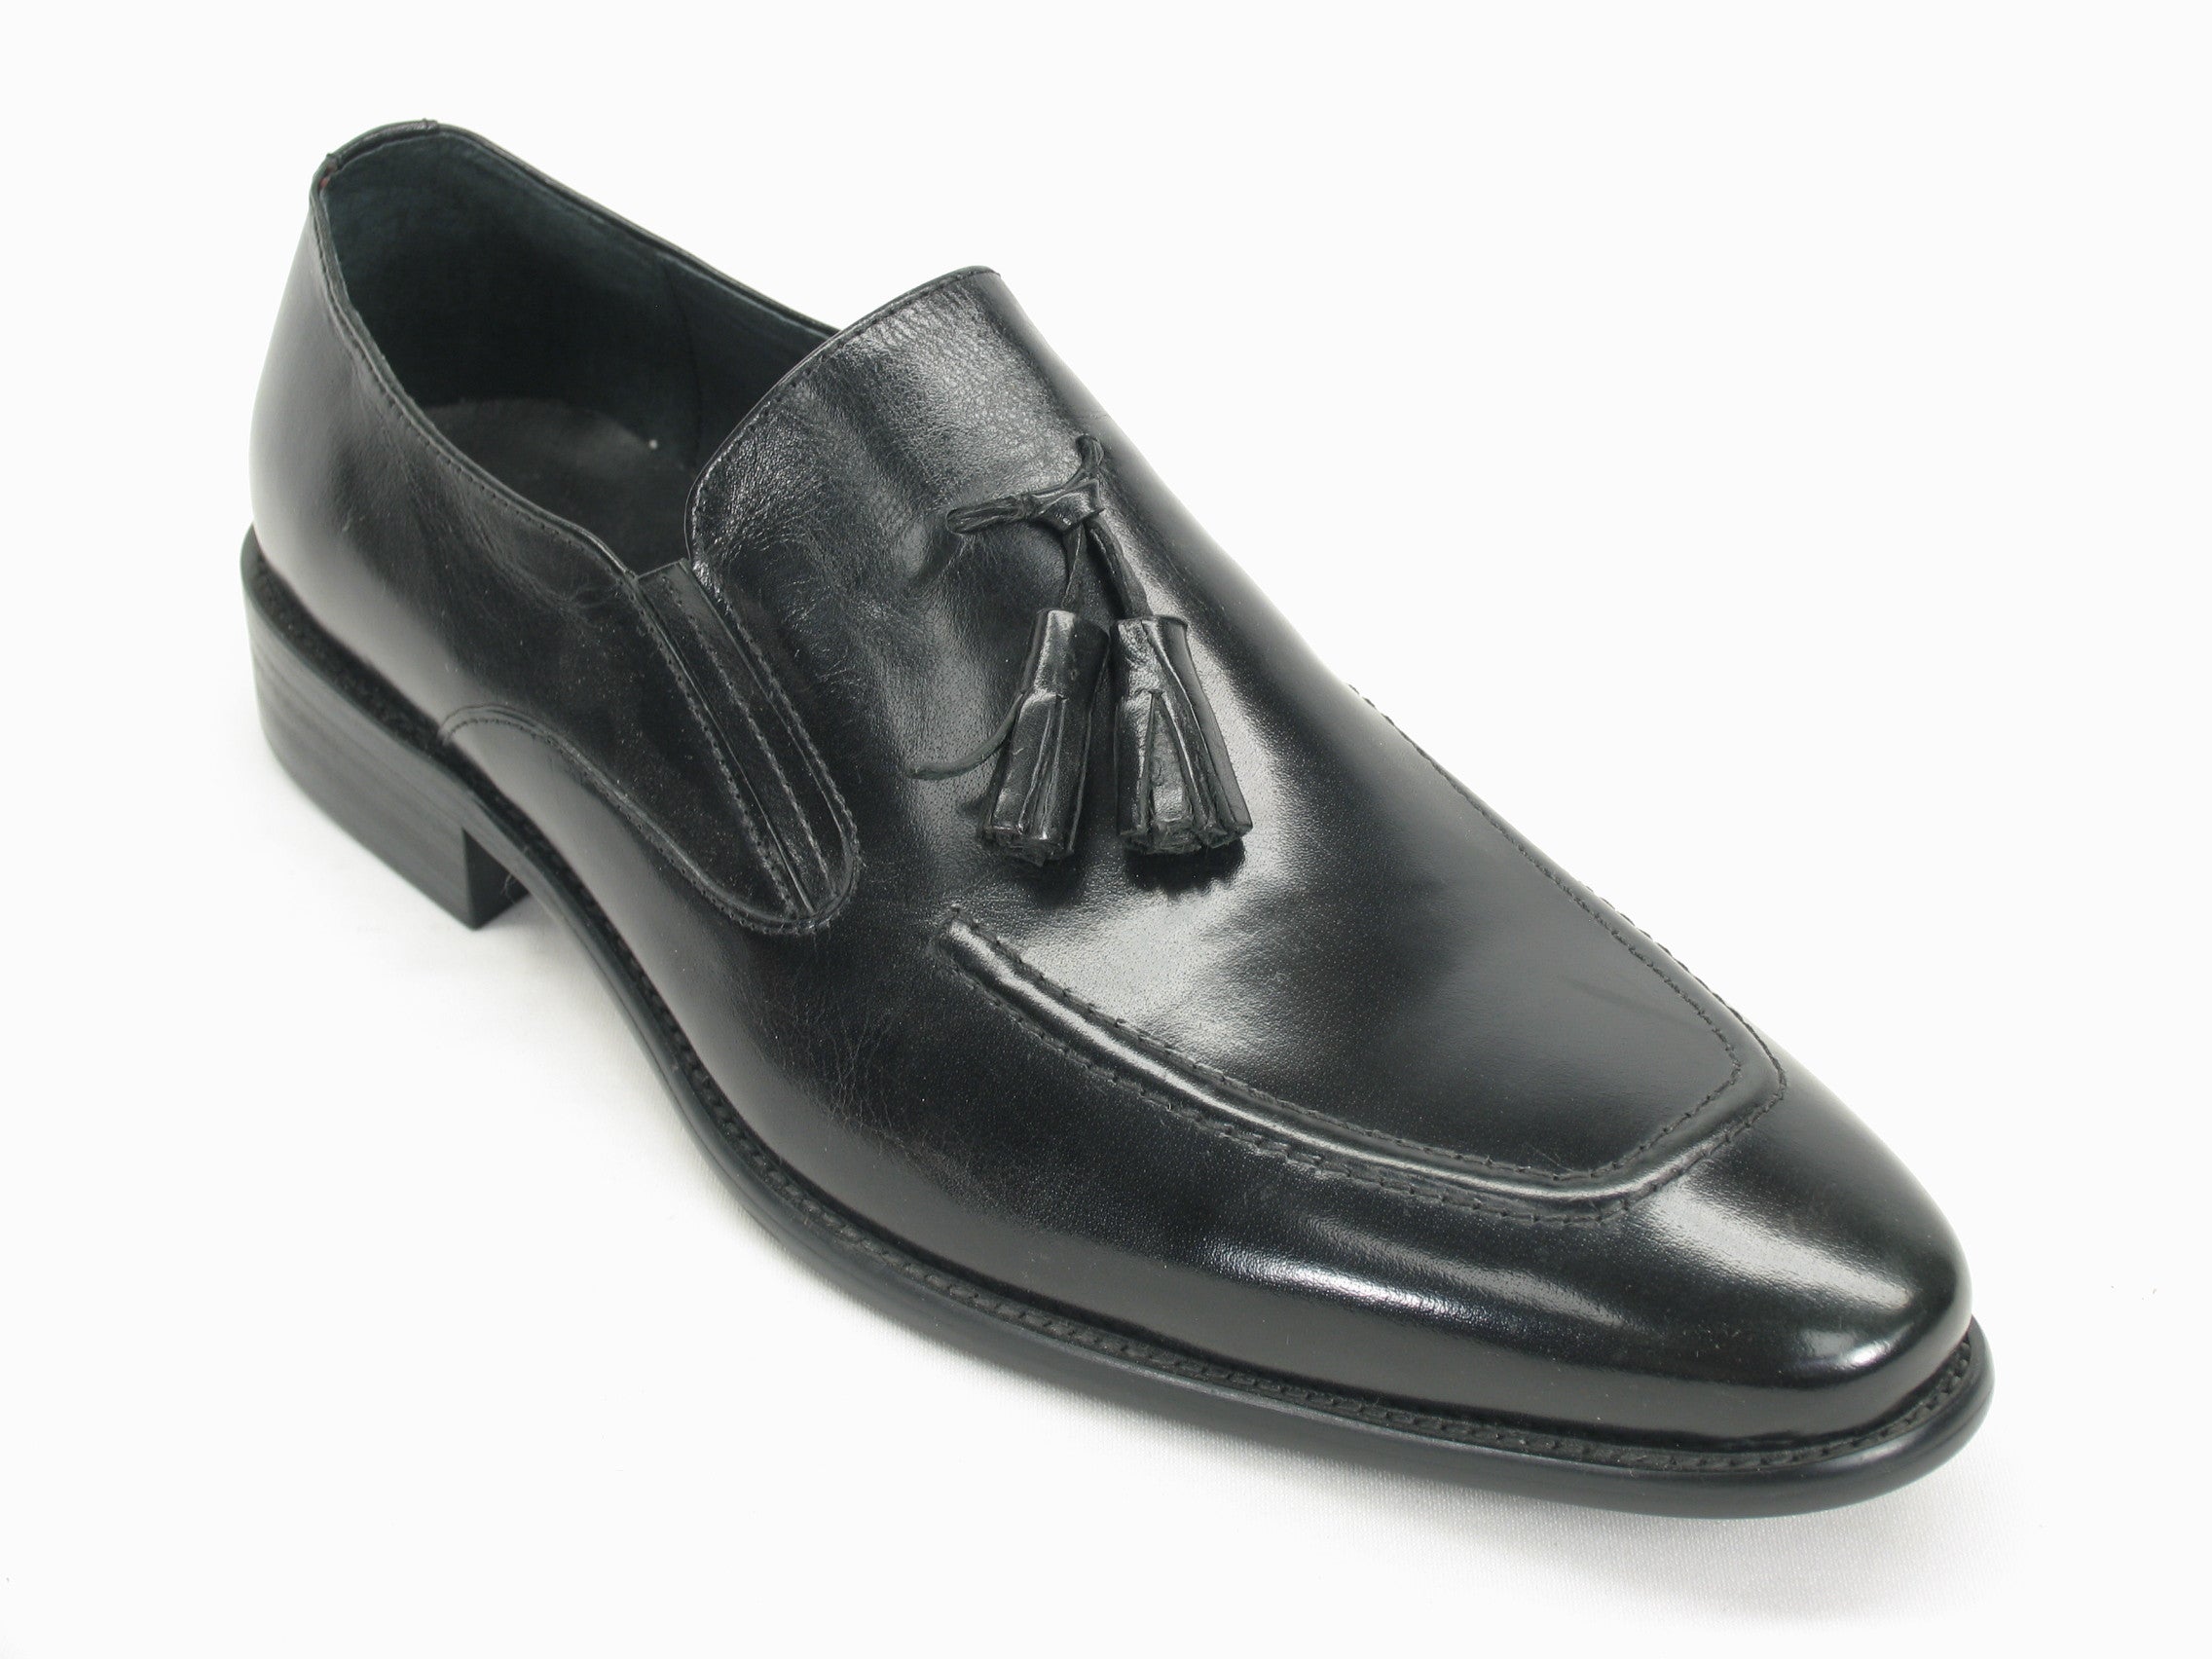 KS099-714 Leather Tassel Loafer